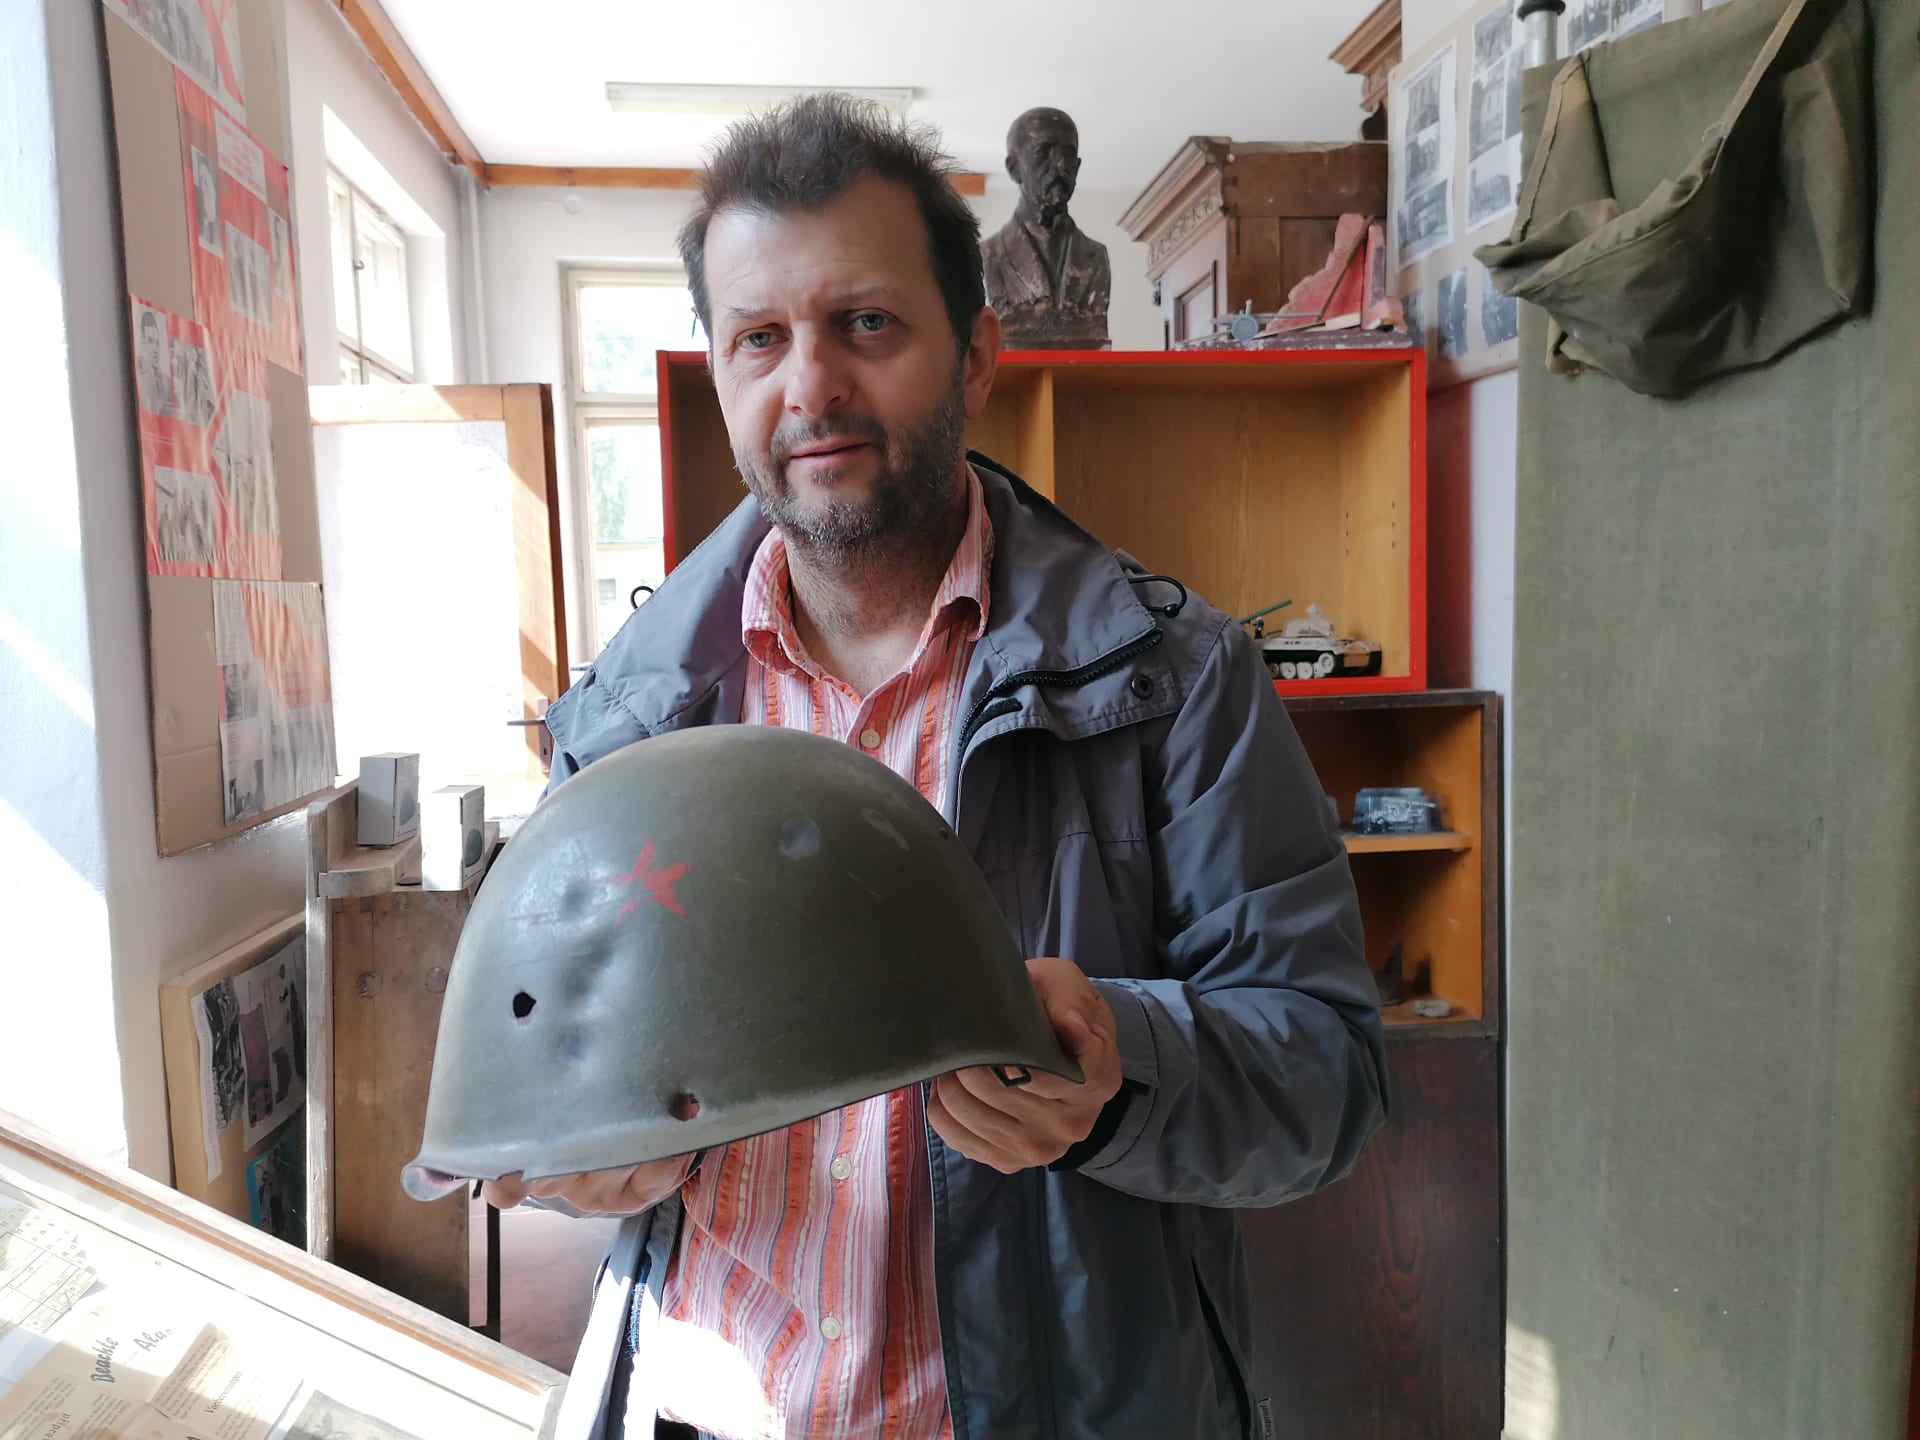 Osoblažské muzeum s nálezy z války. Marian Hrabovský ukazuje prostřílenou ruskou helmu z bitvy o Osoblahu, do muzea brzy přibude nalezený bitevník Il-2 šturmovik.